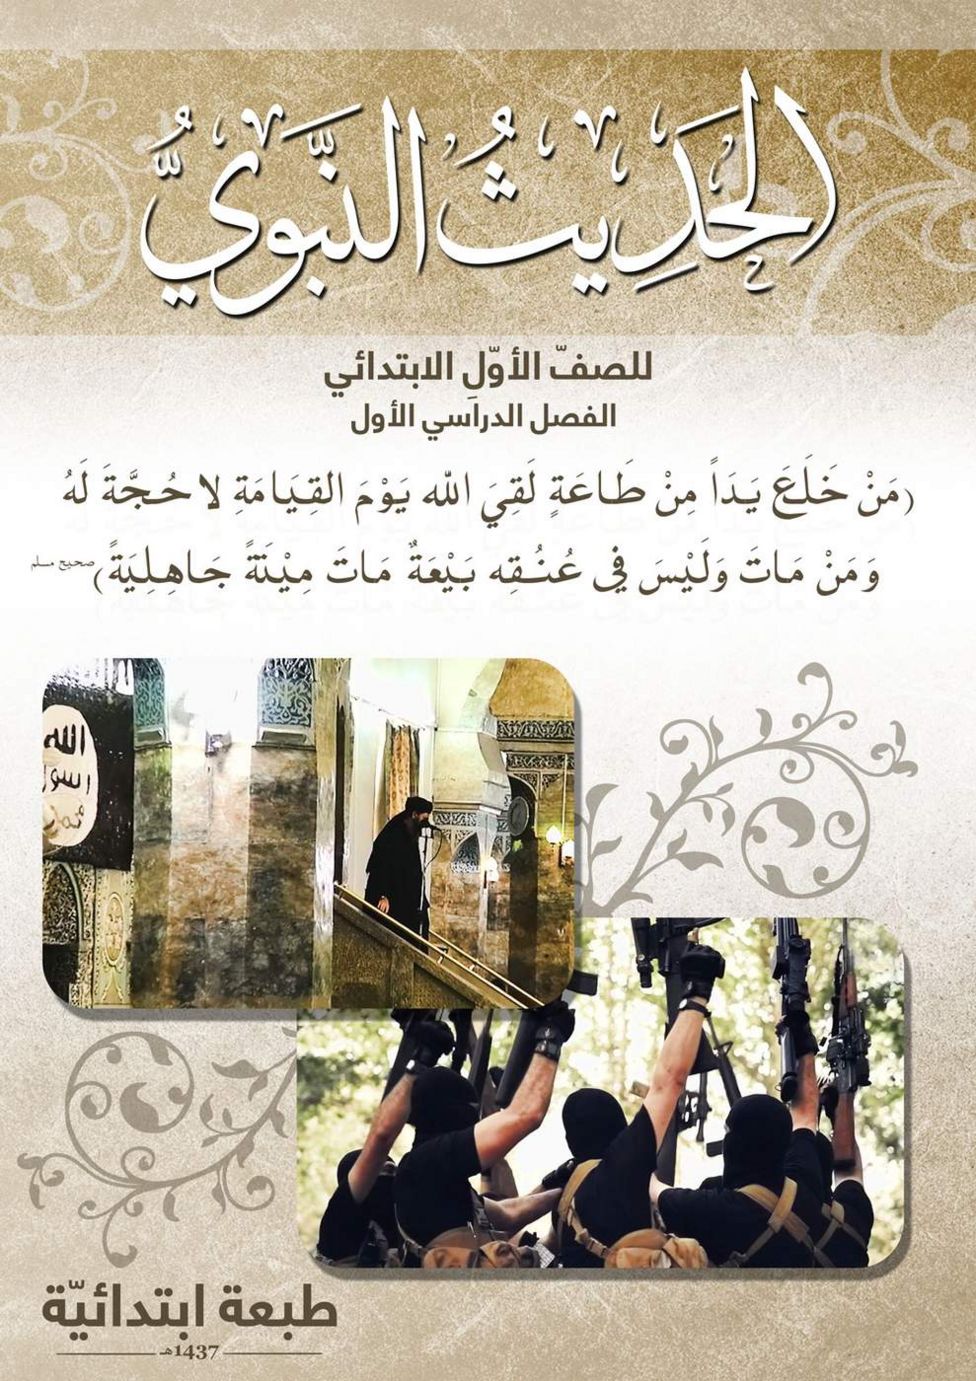 IŞİD ders kitabı: 'Peygamber'in hadisleri' - 1. Sınıf